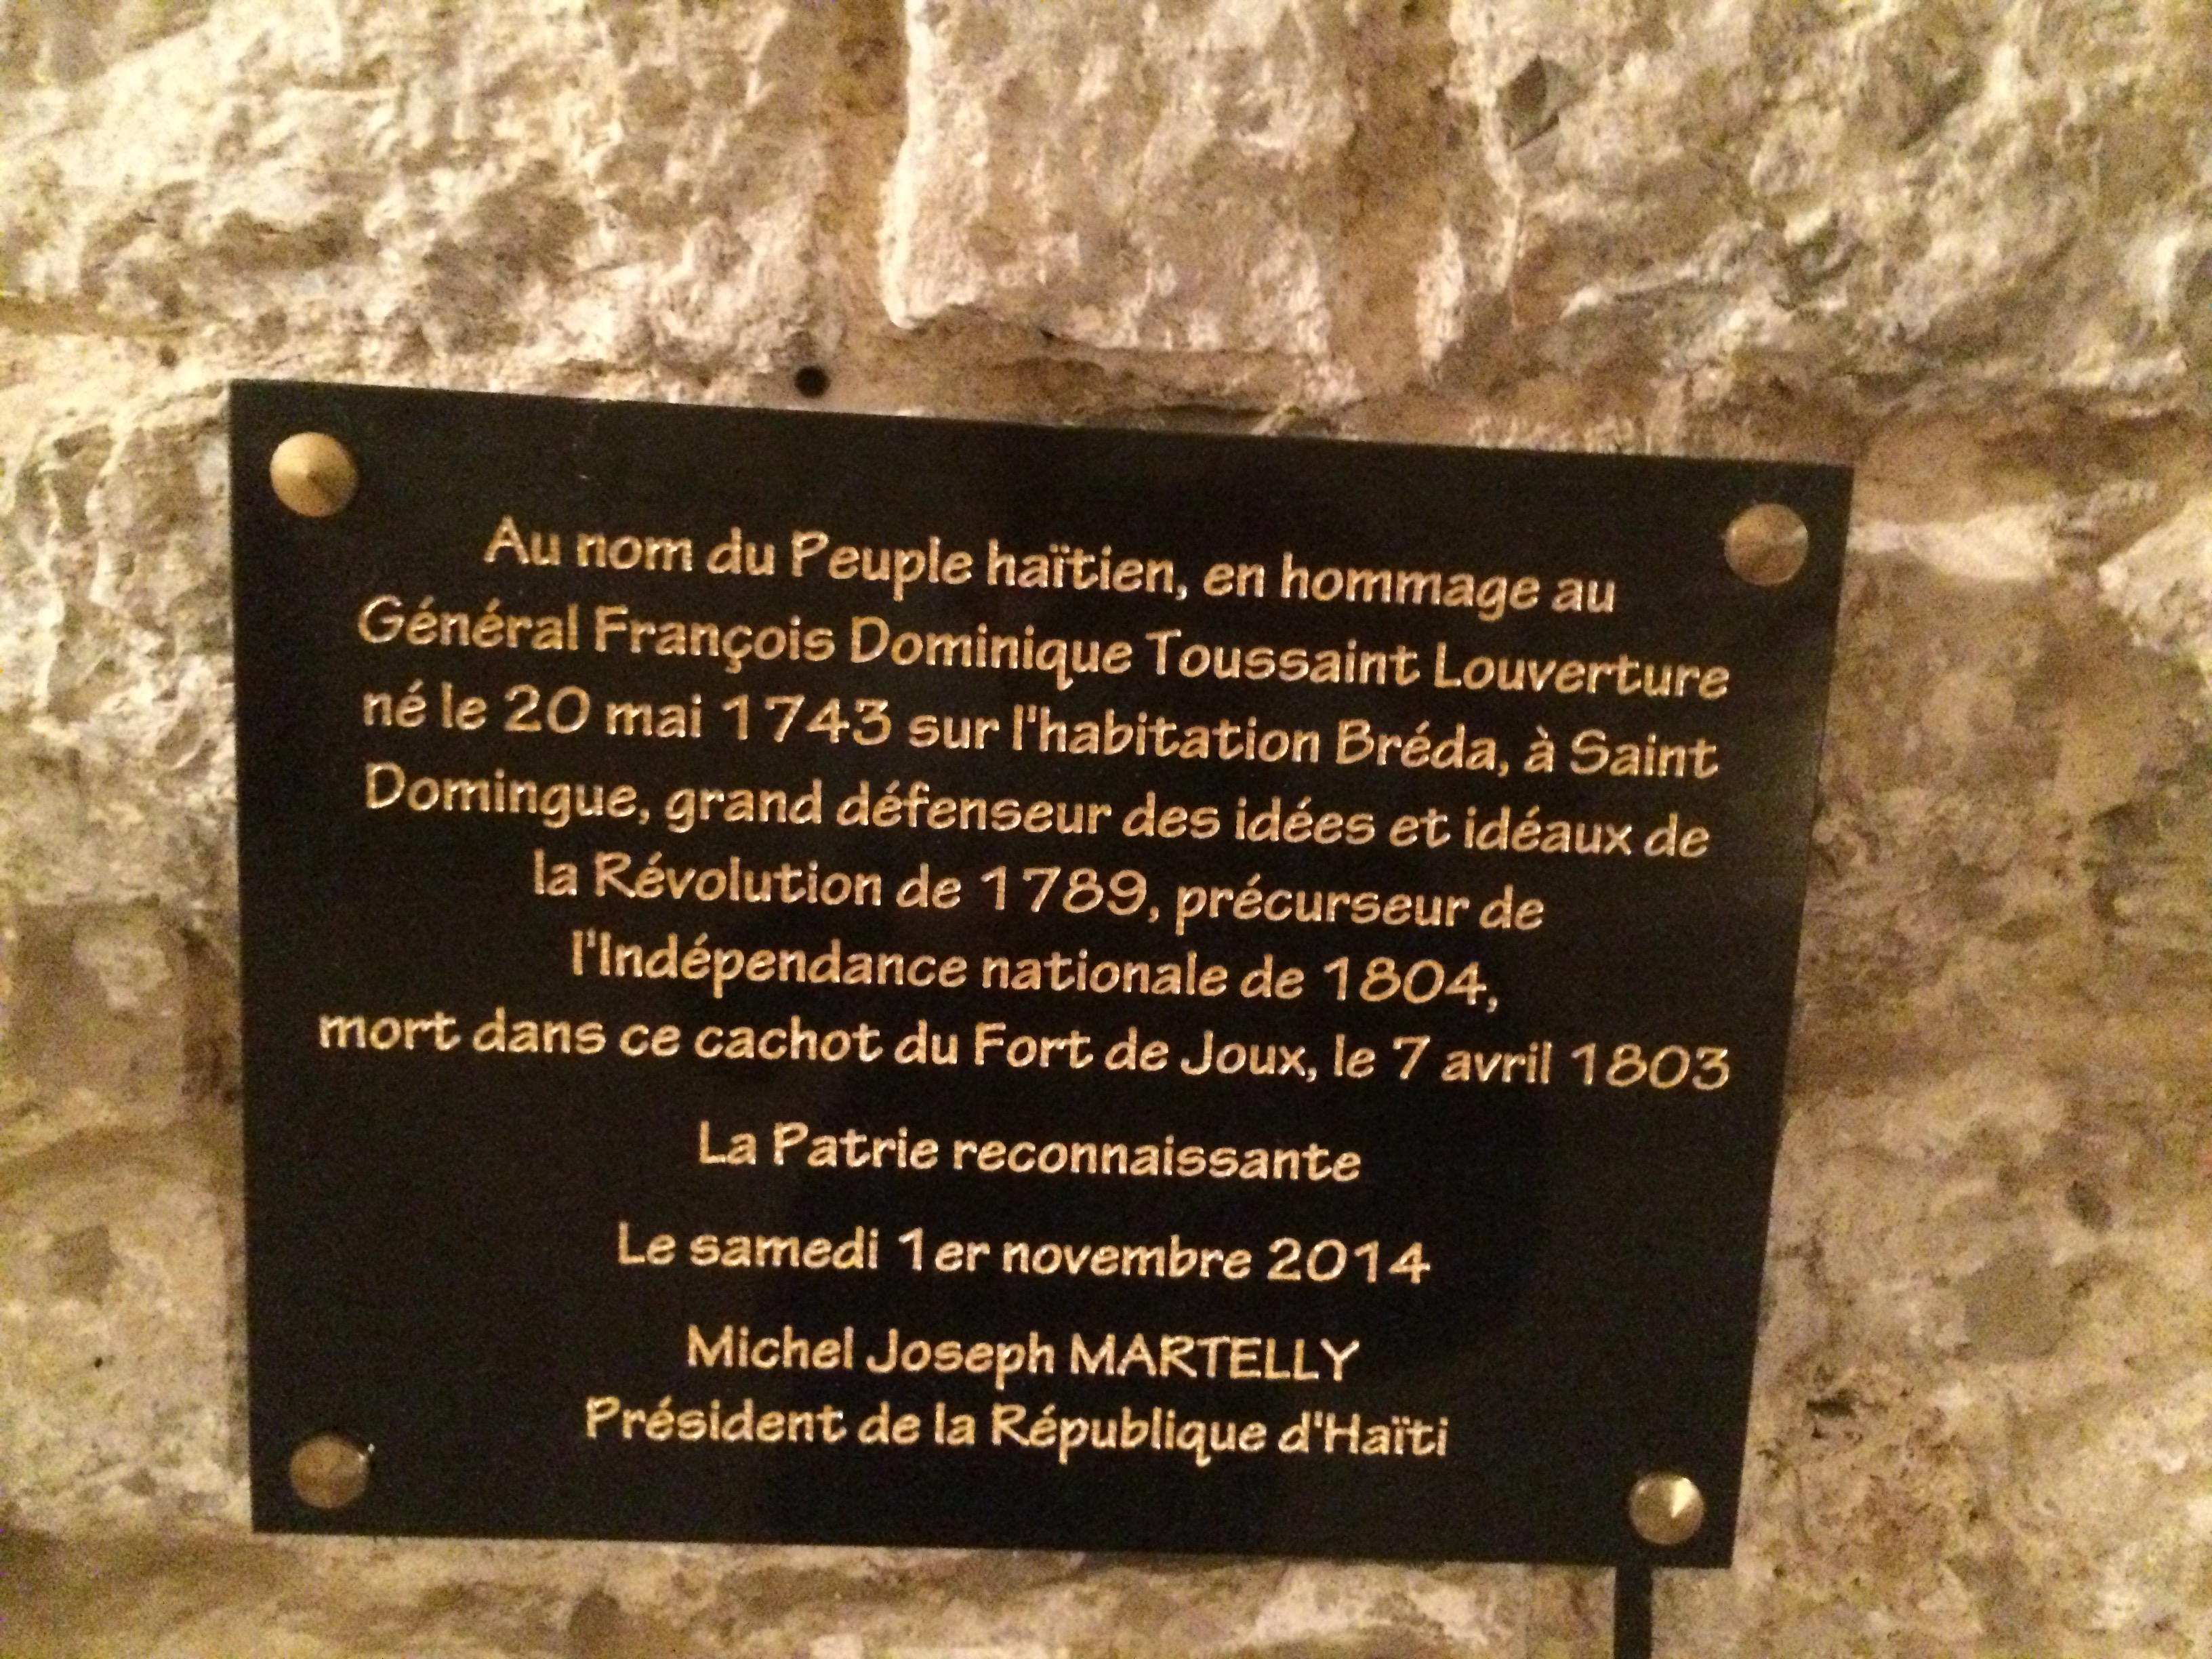 Dans la pièce voisine de la cellule de Toussaint Louverture au fort de Joux, plaque des Routes des abolitions de l'esclavage et des Droits de l'Homme posée en 2008 par Rama Yade, secrétaire d’État. Fort de Joux, 2016. (cc) Wikimedia/Chris93 